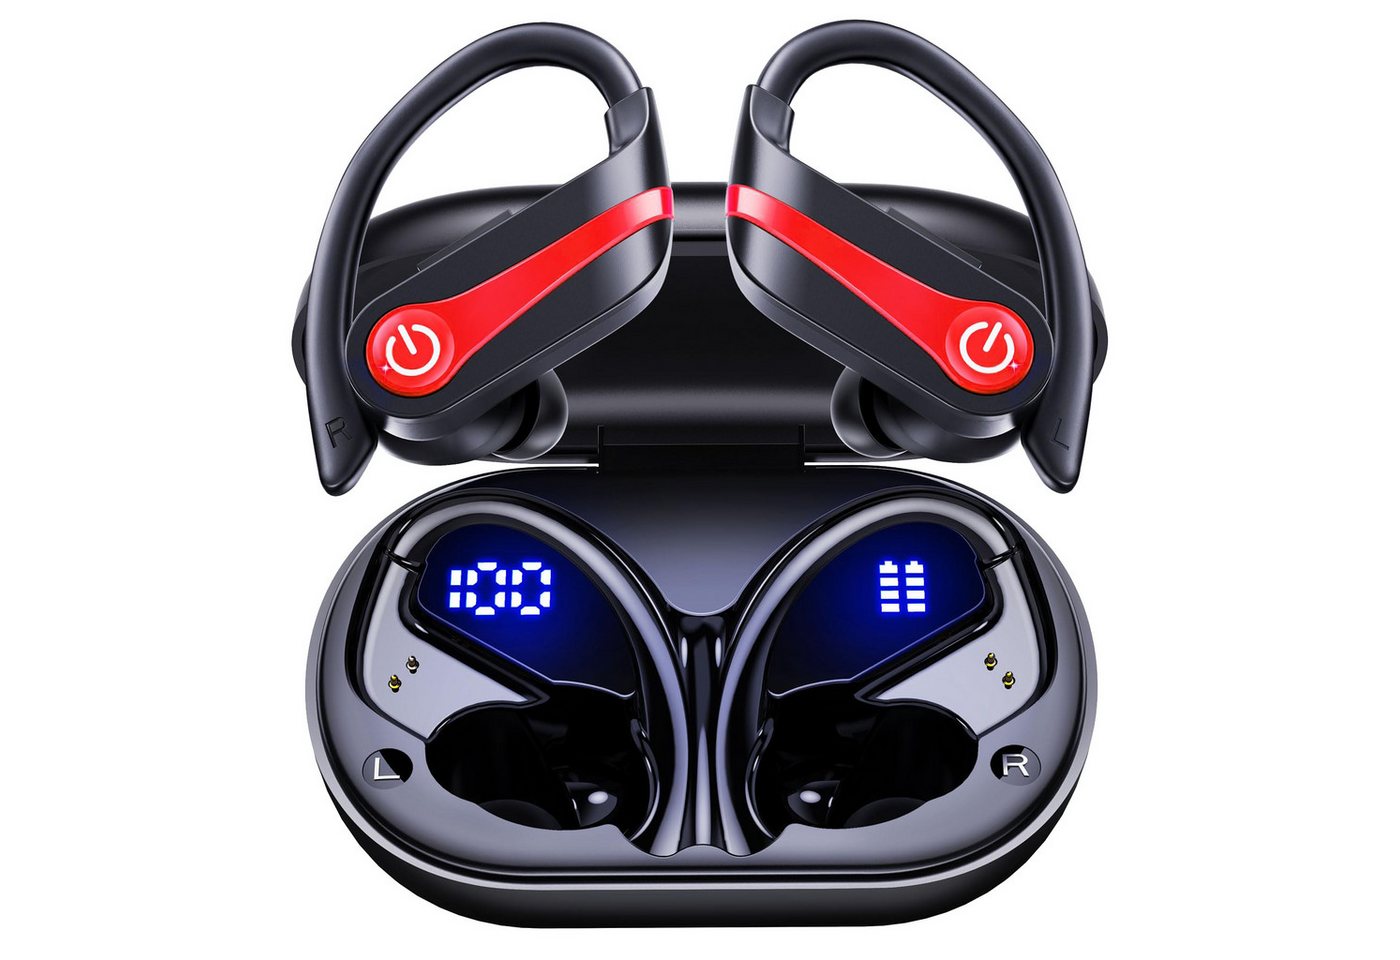 Cbei Kabelloses Bluetooth-Headset wireless In-Ear-Kopfhörer Sport-Kopfhörer In-Ear-Kopfhörer (Ladeetui mit LED Anzeige, Bluetooth 5.3, am Ohr montierte Sportgeräuschunterdrückung, wasserdicht IPX7, Geräuschreduzierung, Ideal for running, training, gym, traveling, even rainy days) von Cbei